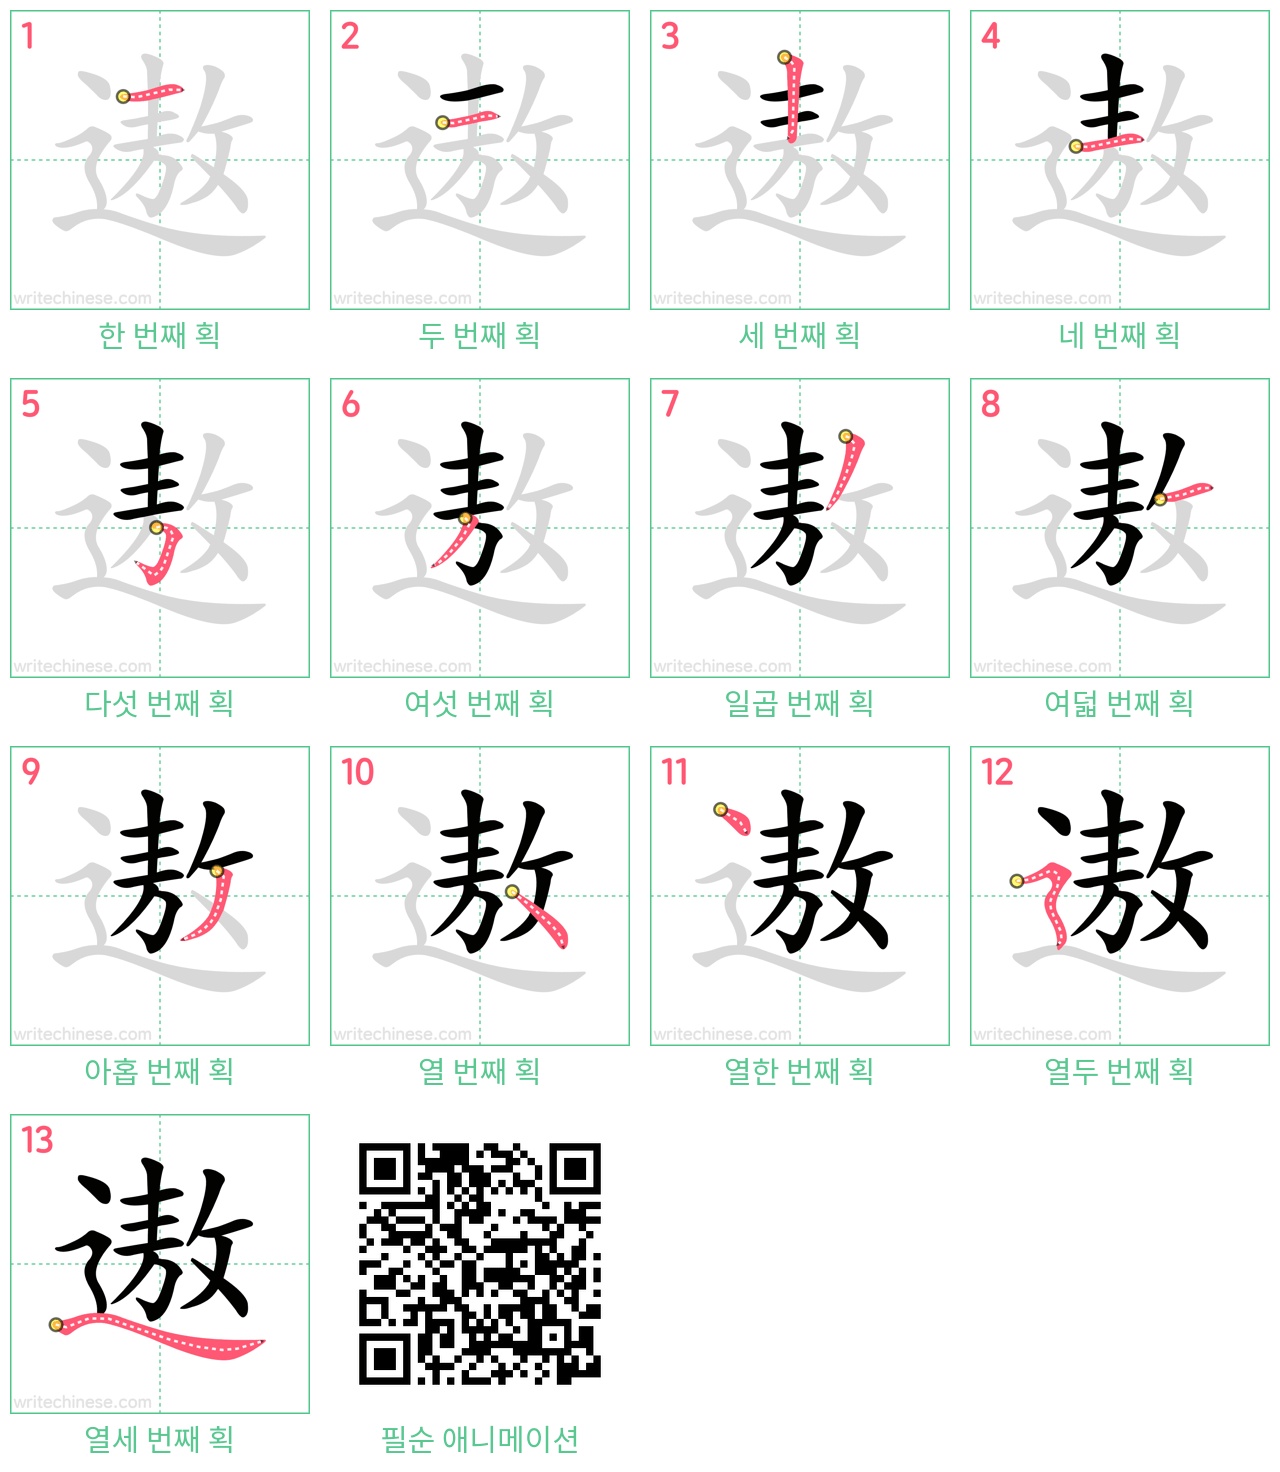 遨 step-by-step stroke order diagrams